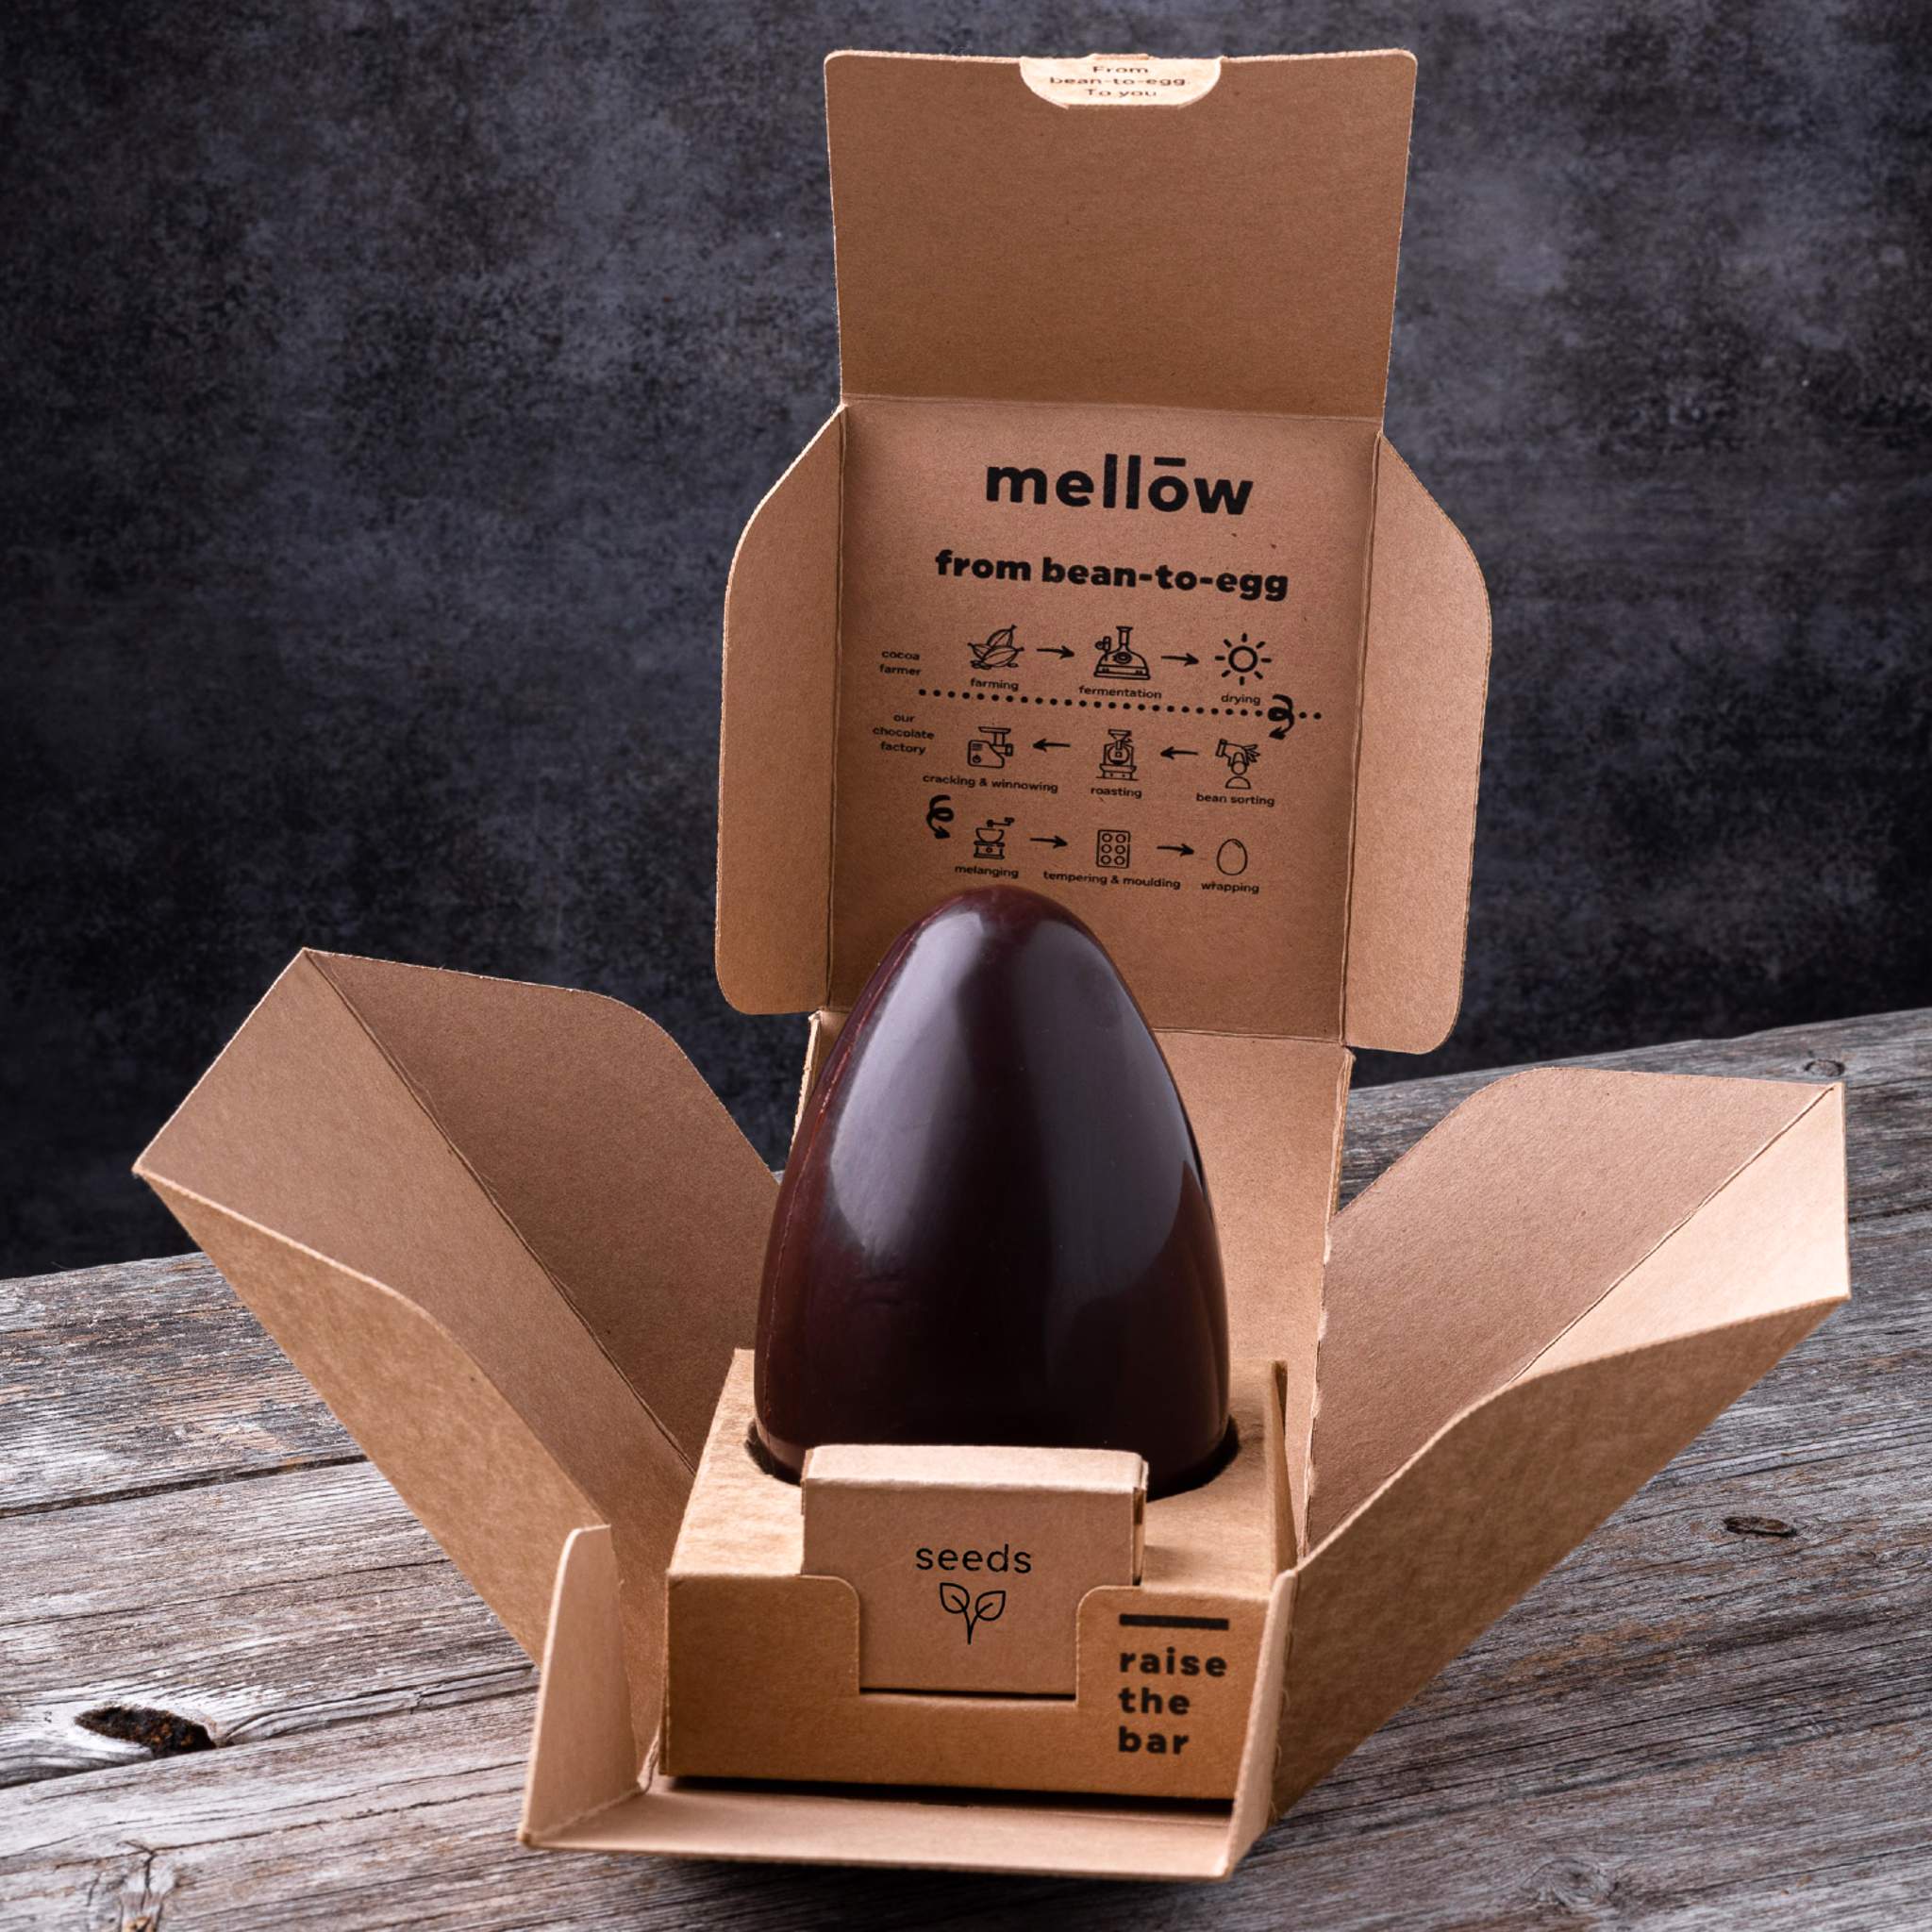 Økologisk chokolade påskeæg from bean-to-egg fra danske Mellow, Oliviers & Co